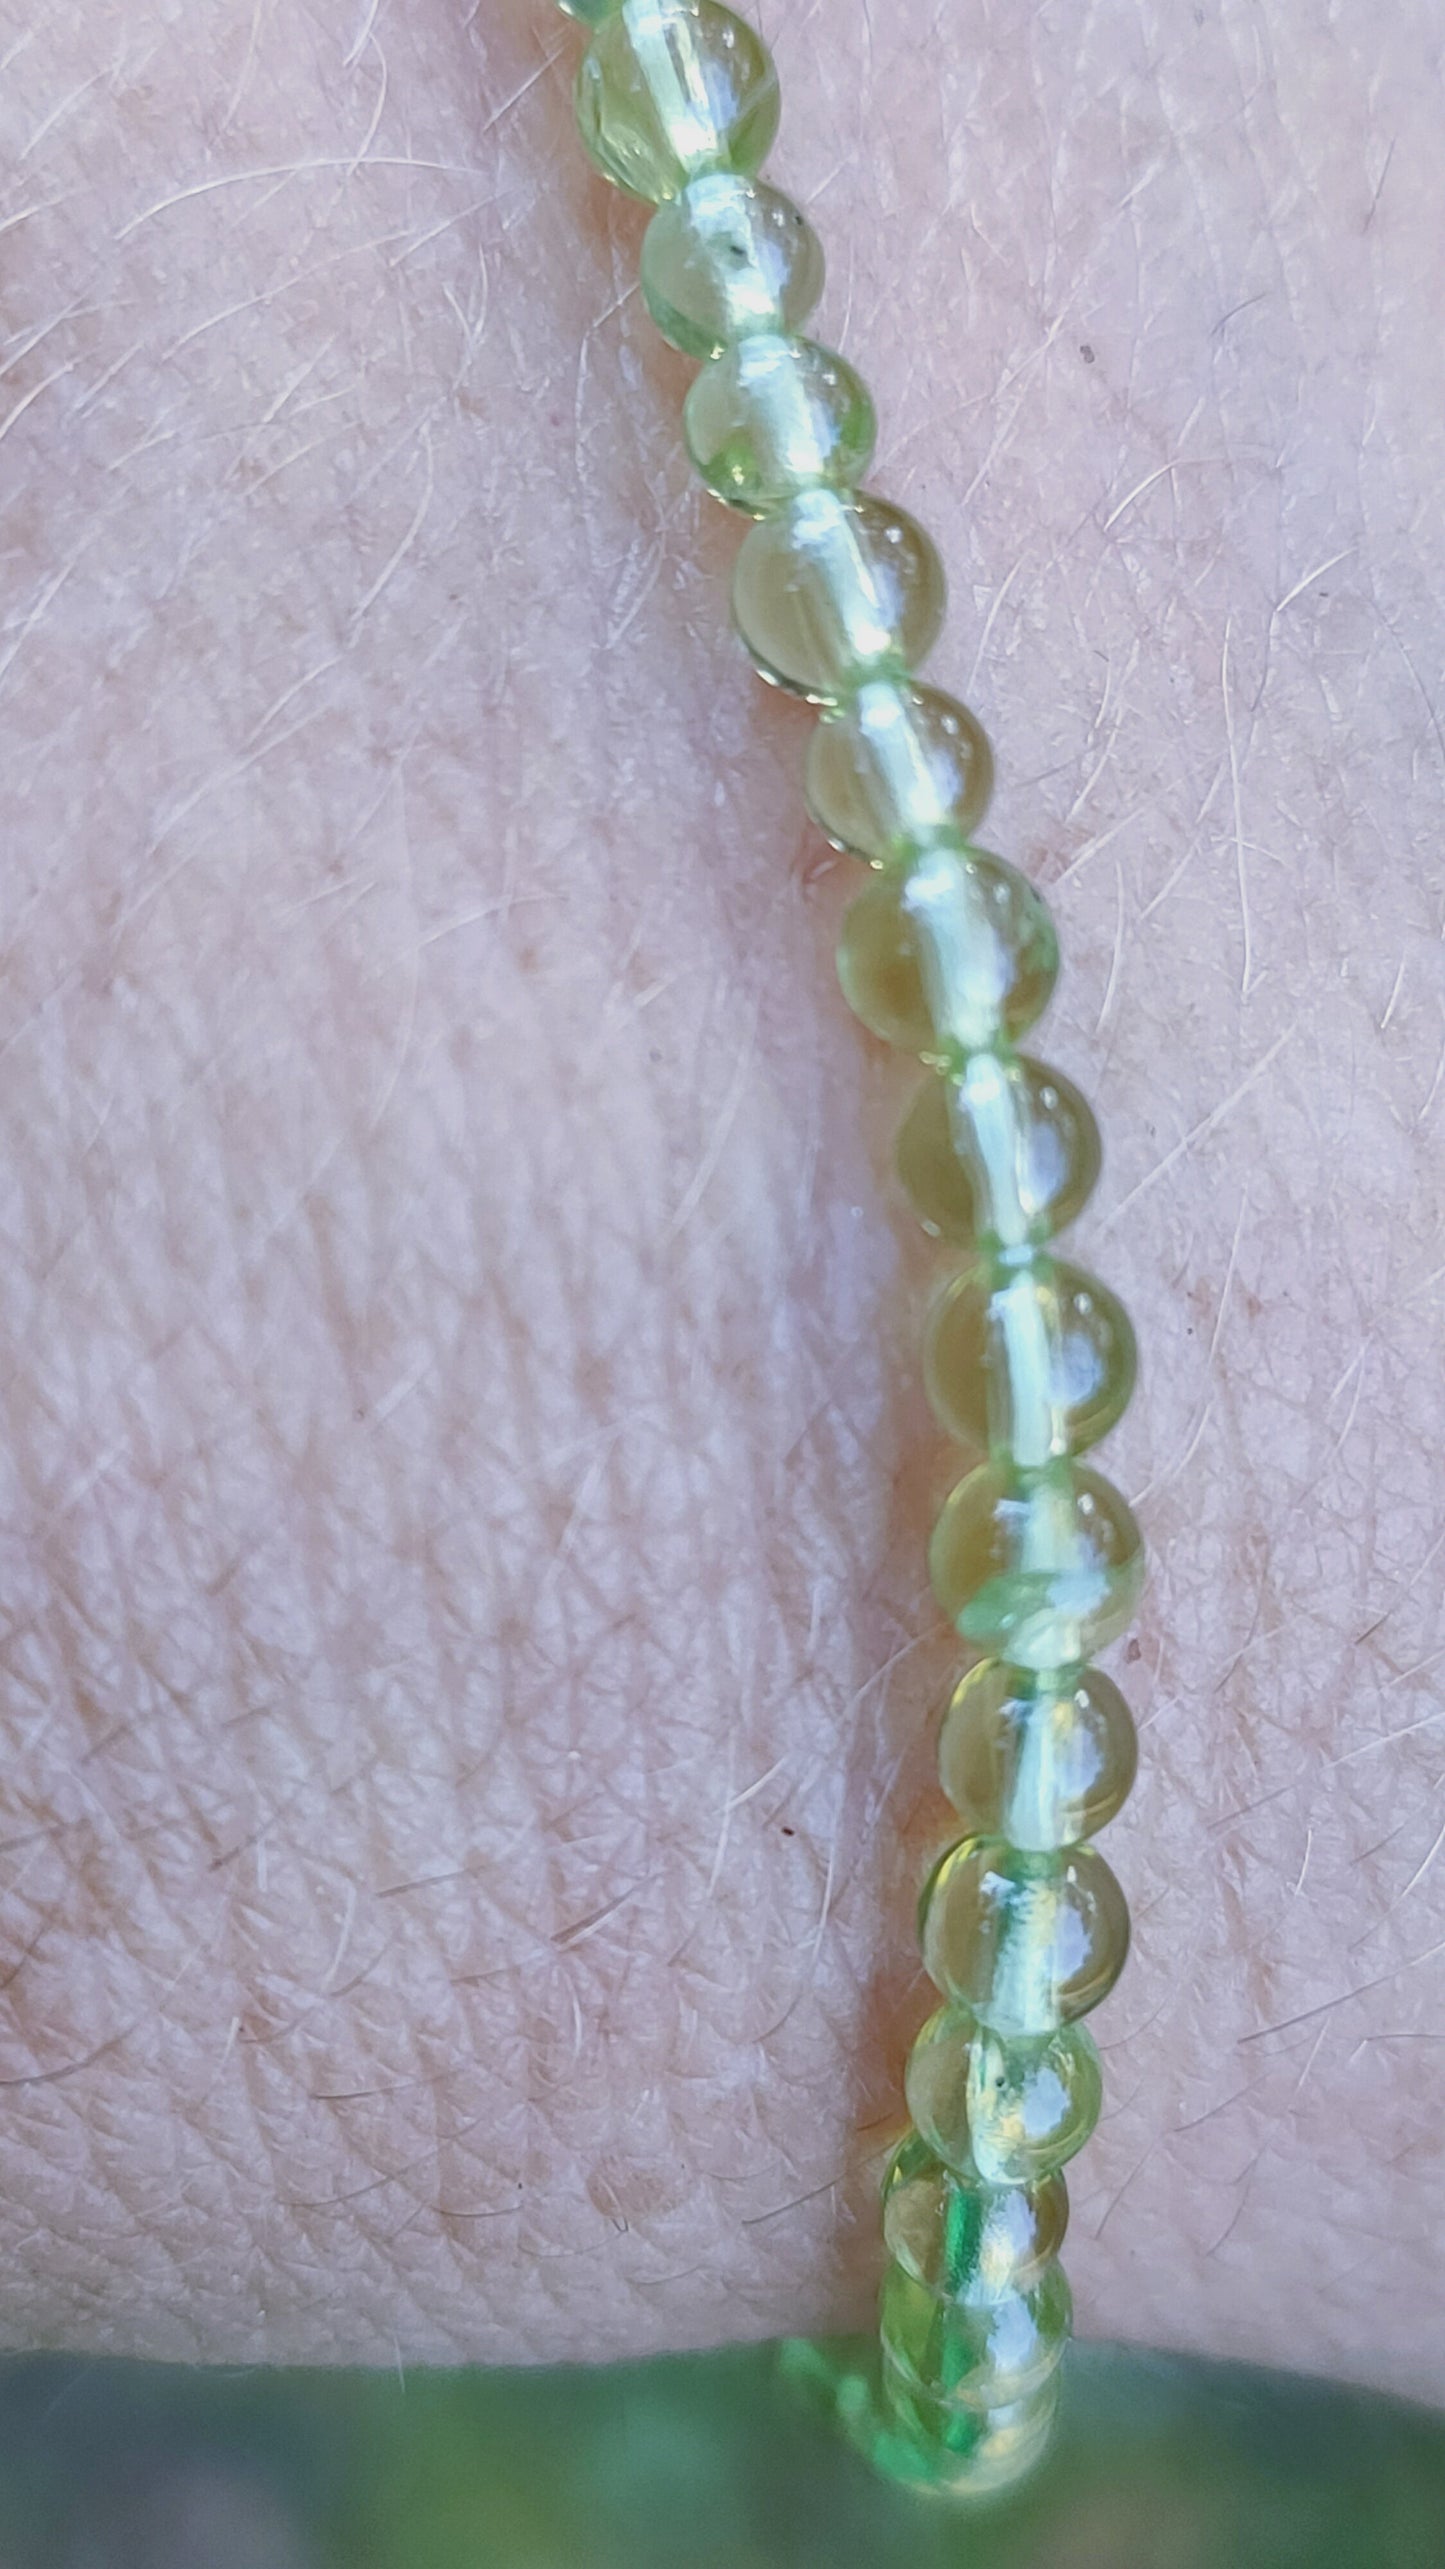 Bracelet en Peridot  - perles de 4 mm - qualité 💎💎💎💎